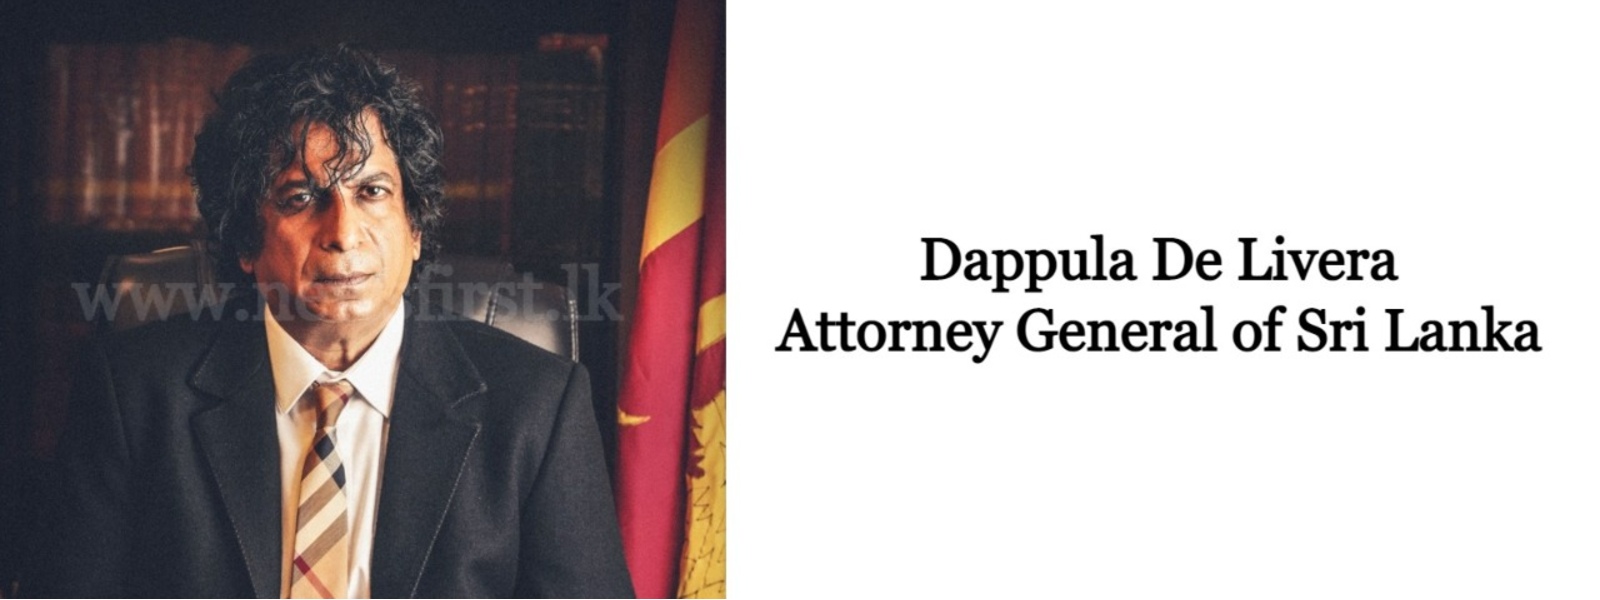 EXCLUSIVE : Grand Conspiracy behind 2019 April Attacks; AG Dappula De Livera